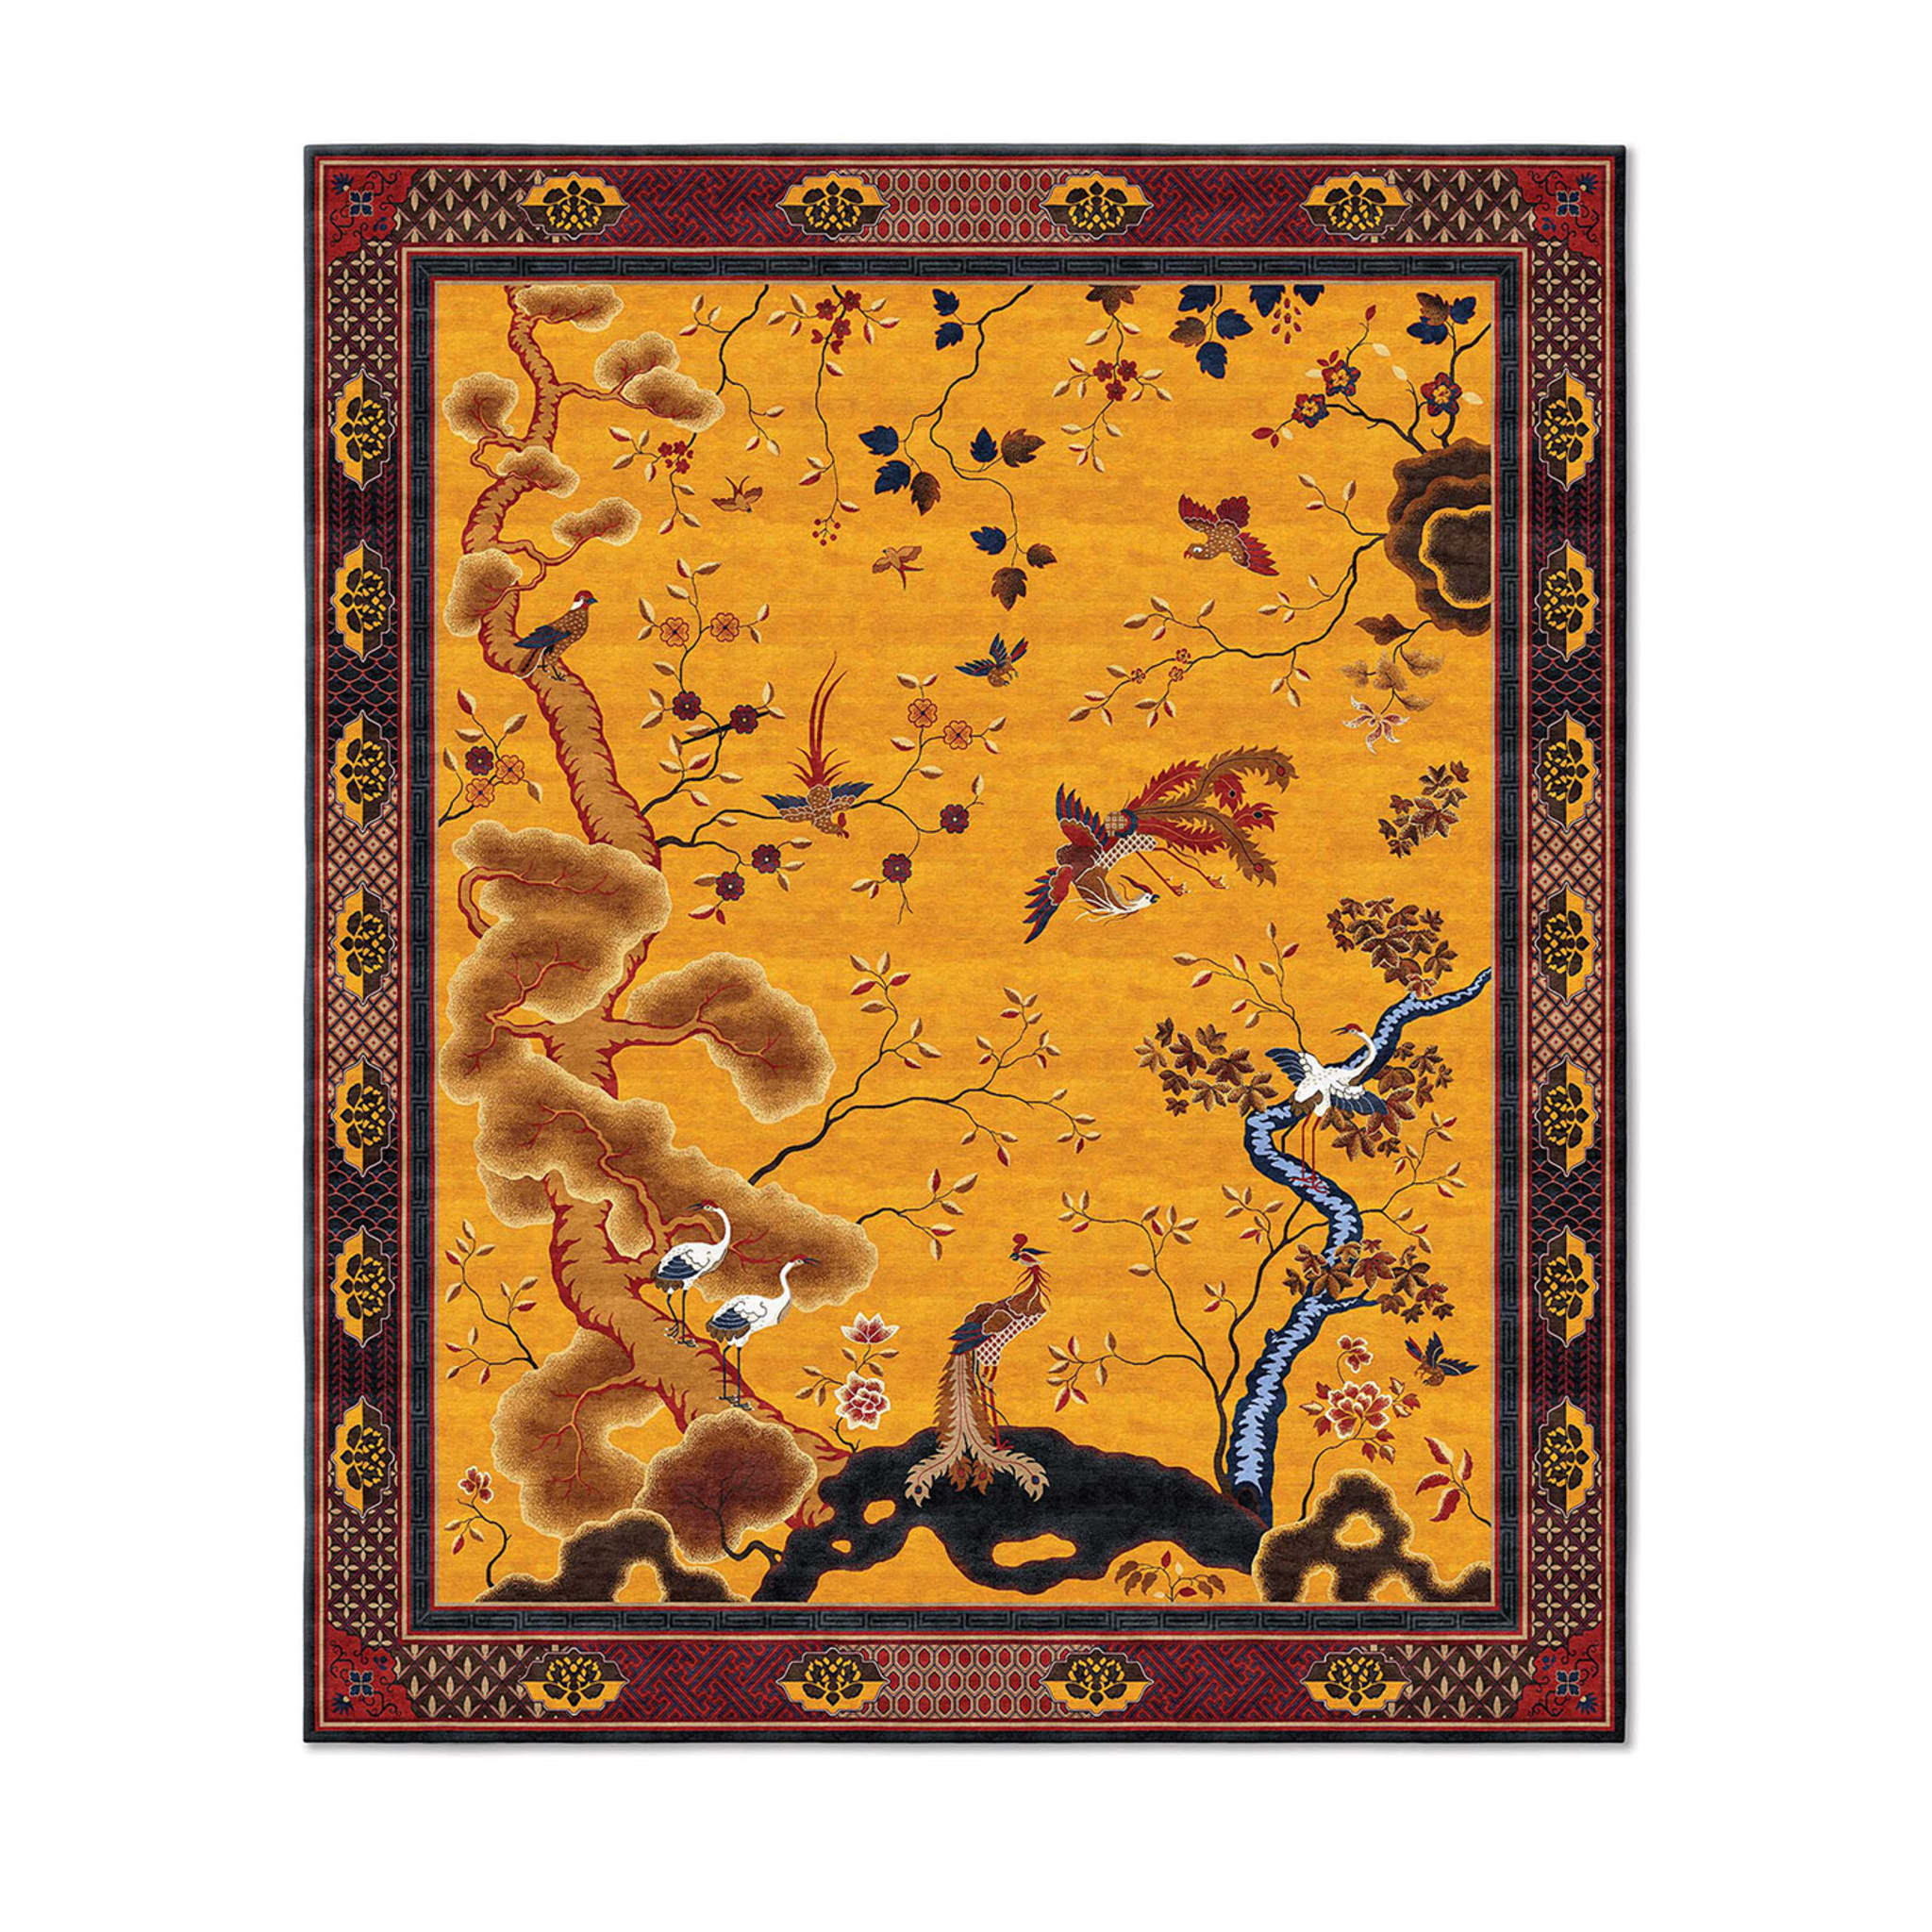 Chinesischer Phoenix Antique Gold Rechteckiger Teppich - Hauptansicht